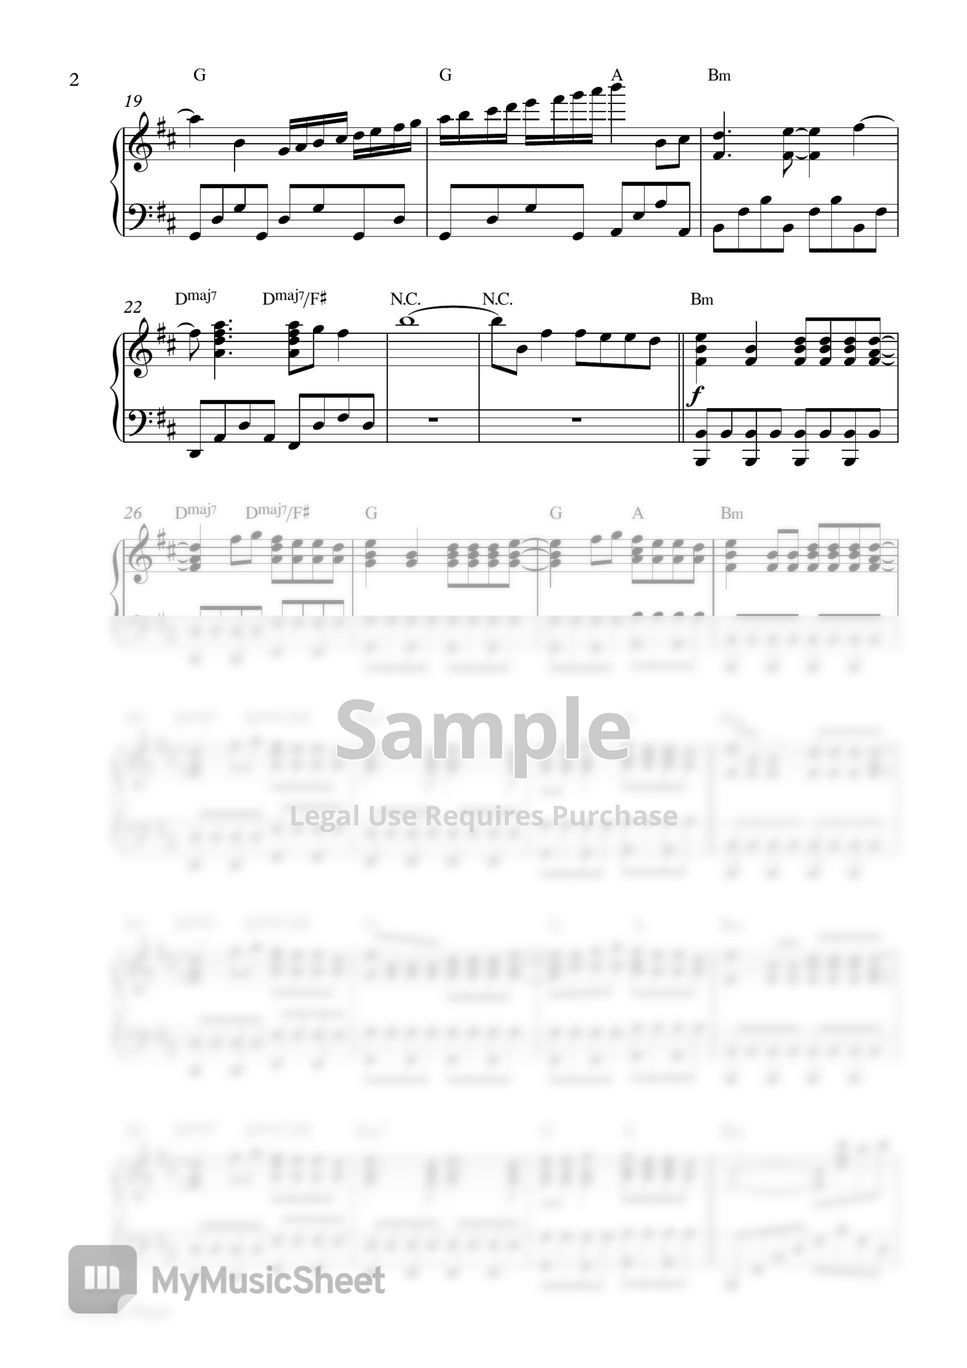 Ed Sheeran - Bad Habits (Piano Sheet) by Pianella Piano